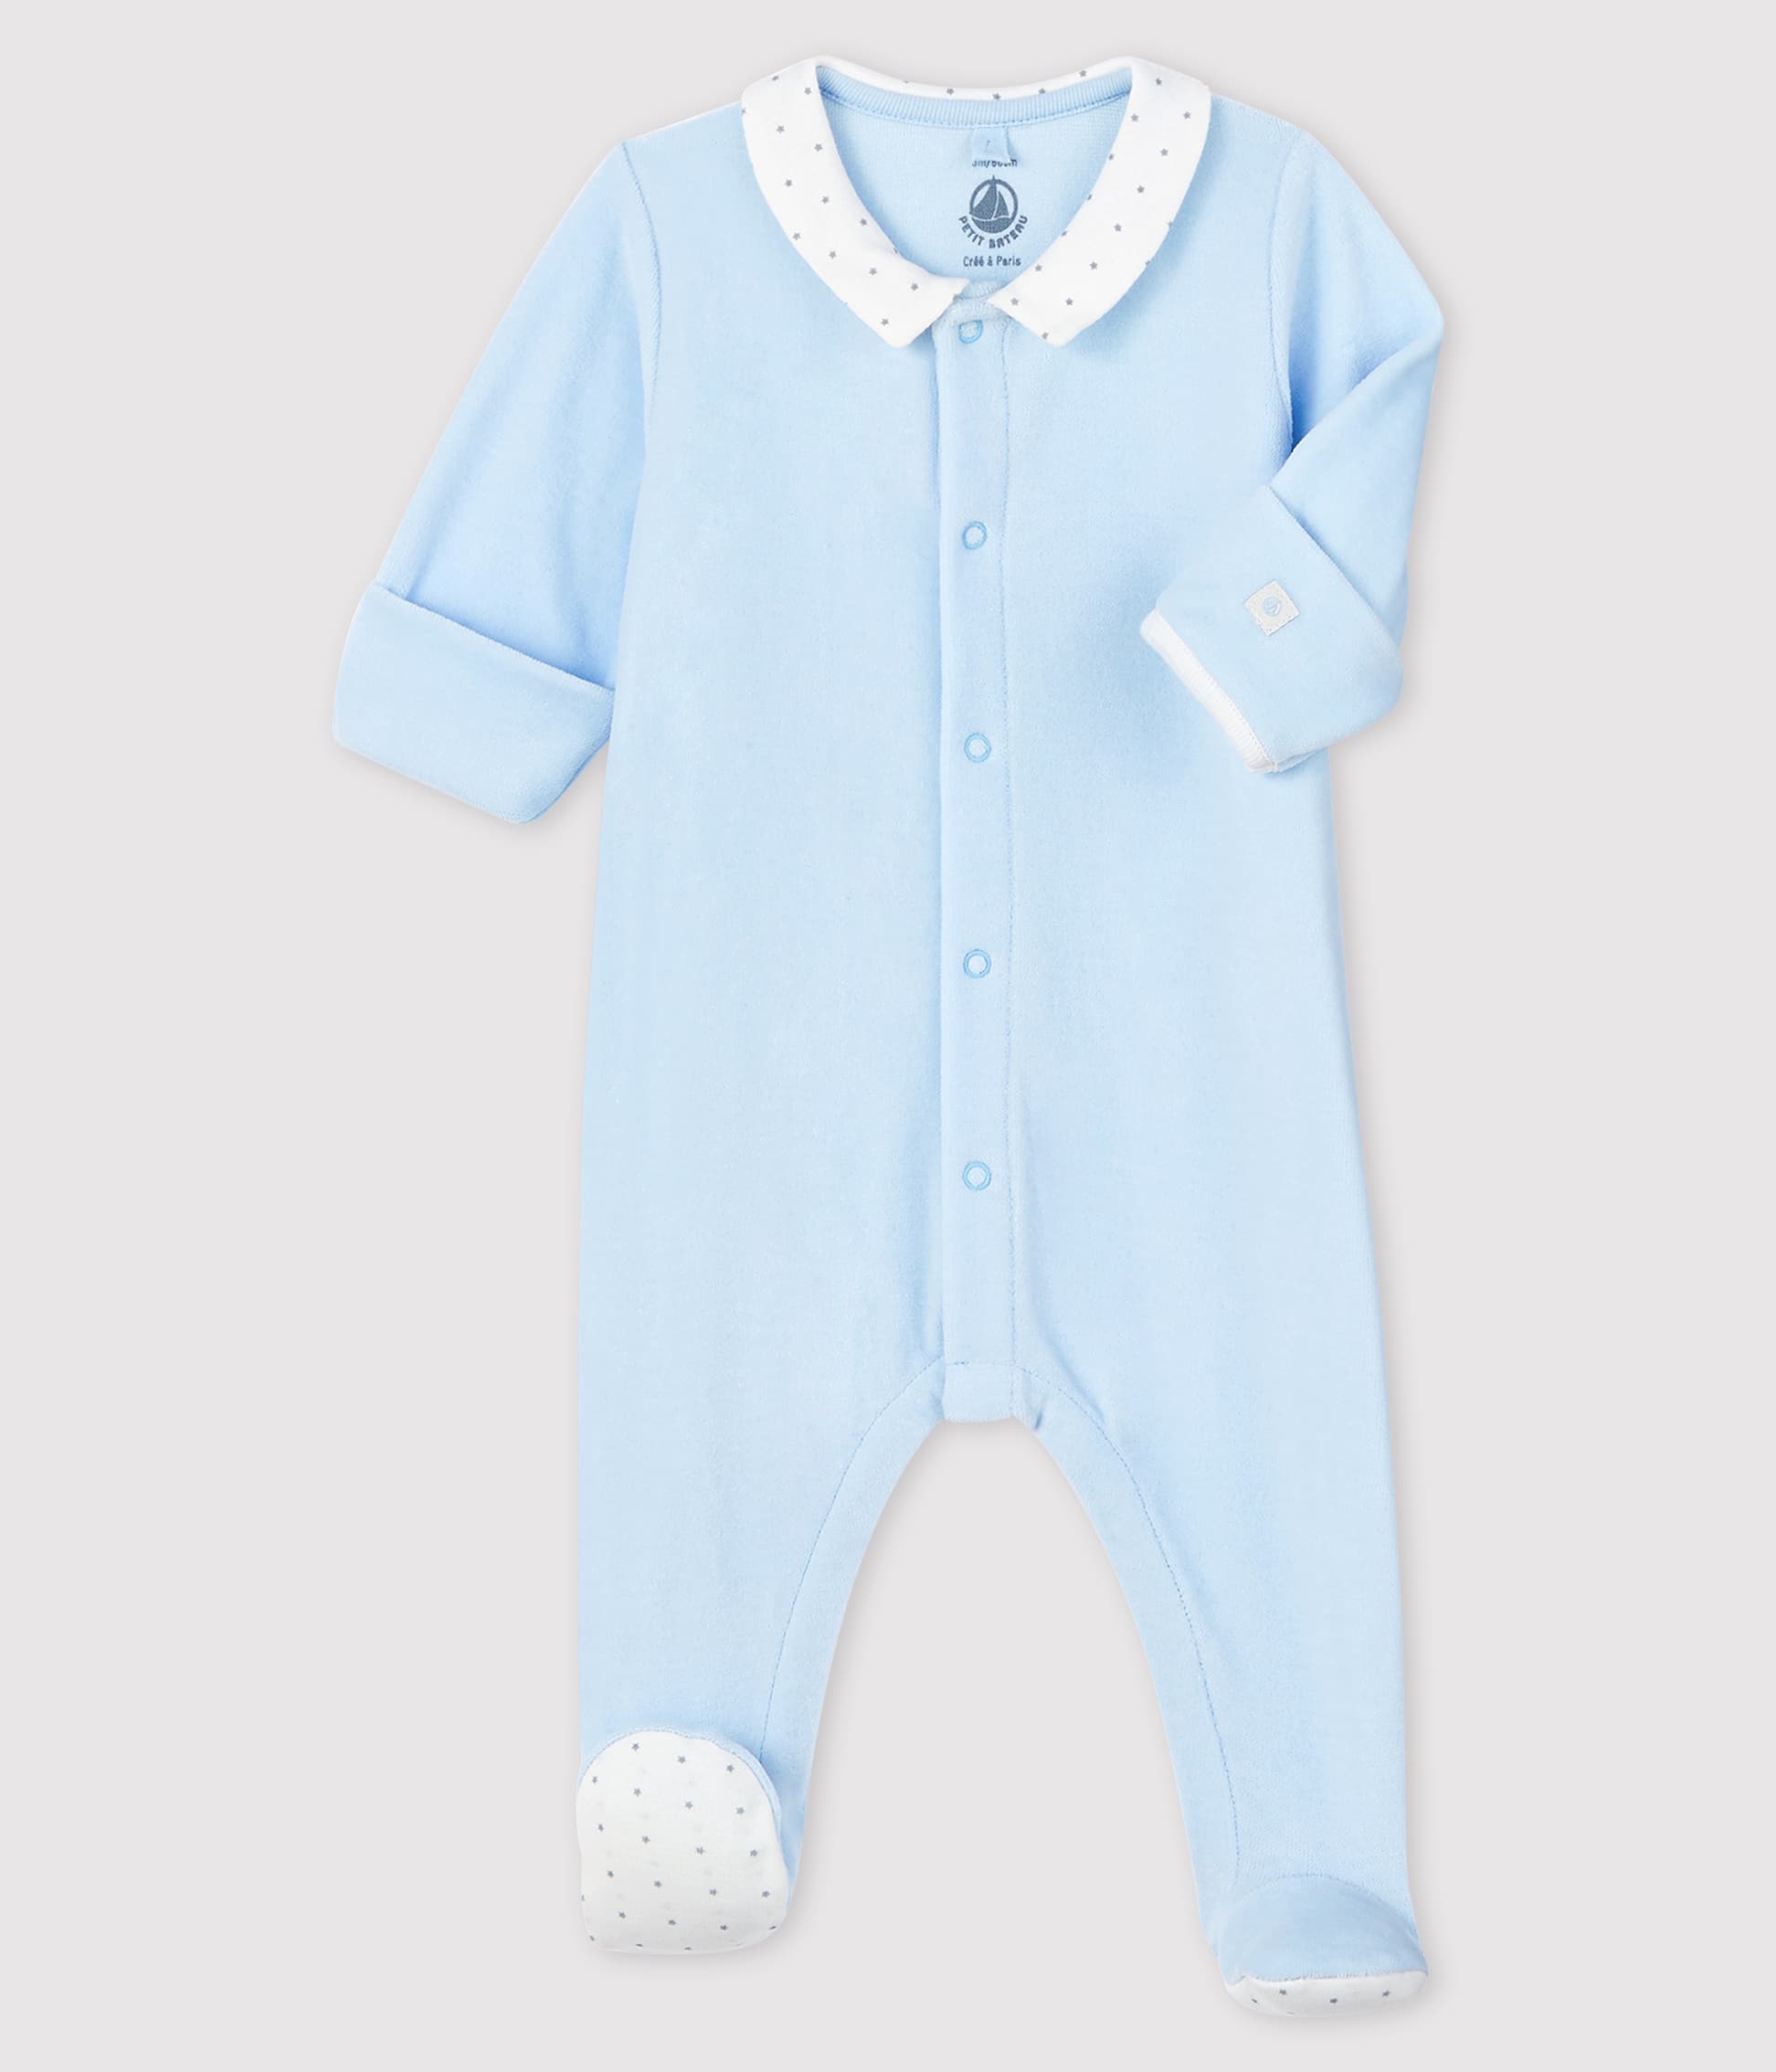 EOZY Ensemble de Pyjama Bleu Enfant Bébé Combinaison Dors Bien